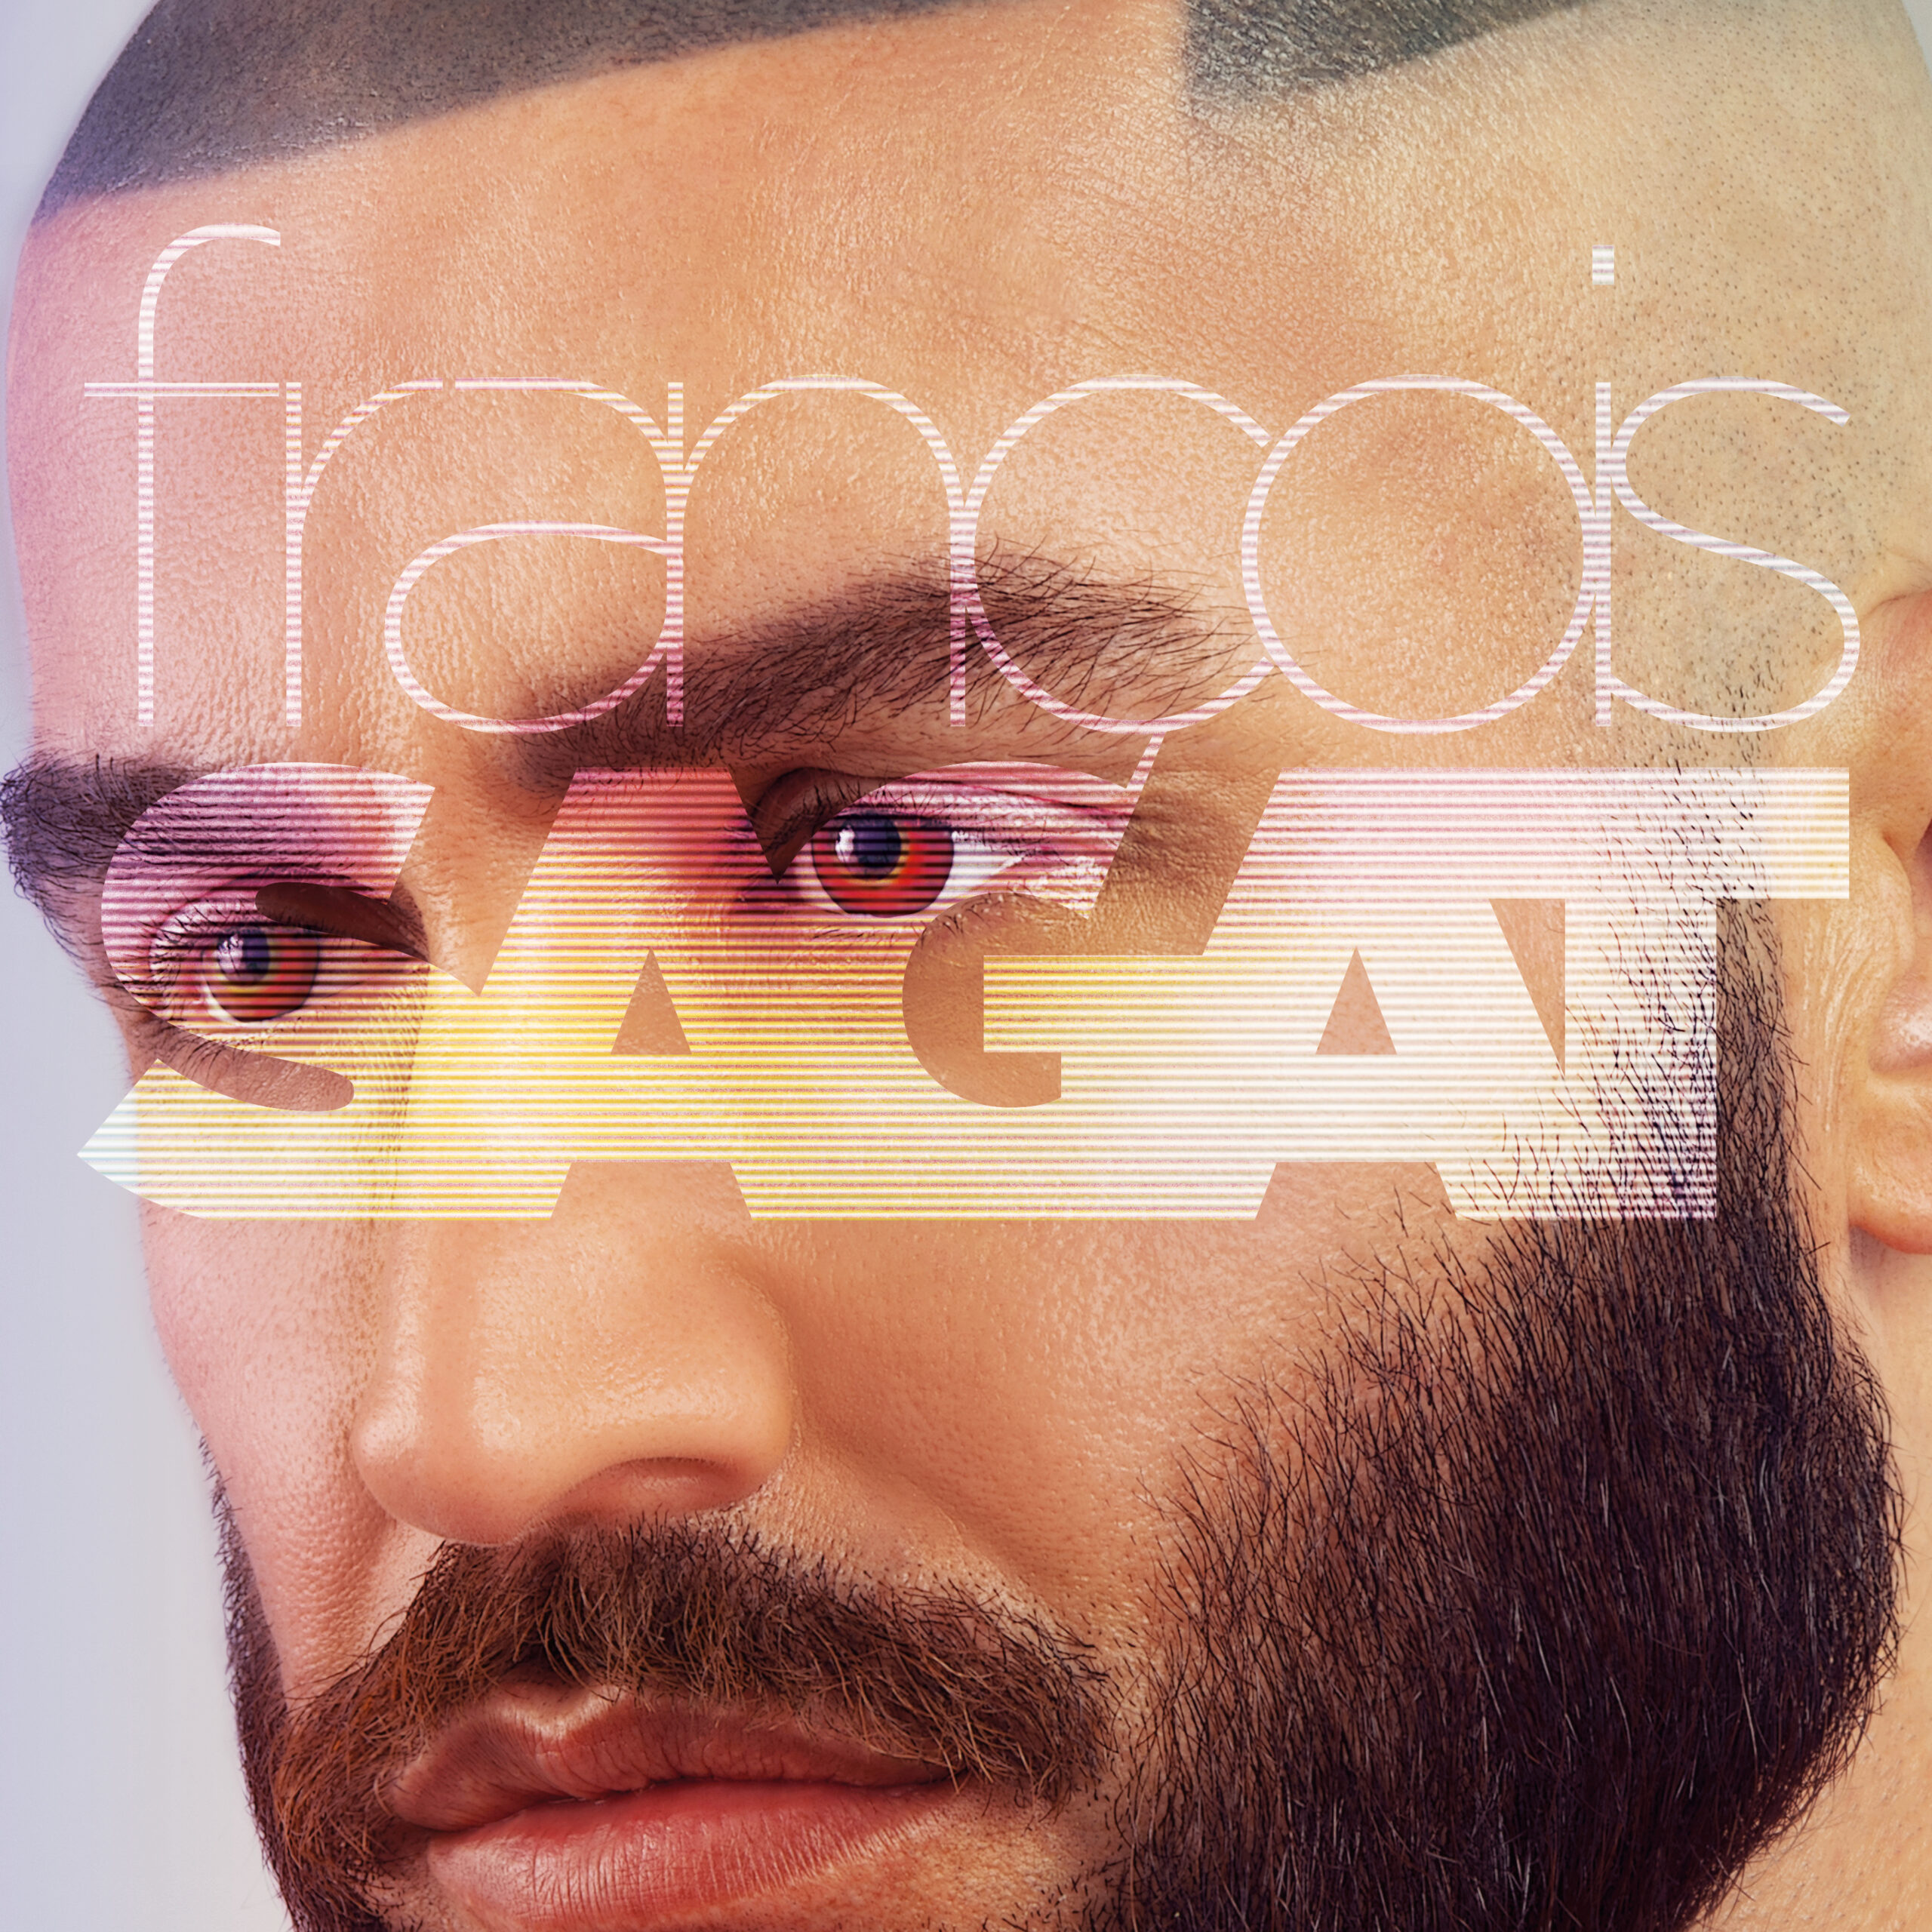 visuel de l'album VIDEOCLUB de François Sagat représentant son visage en gros plan, marqué par son nom logo qui s'affiche en surimpression avec un effet d'ecran cathodique